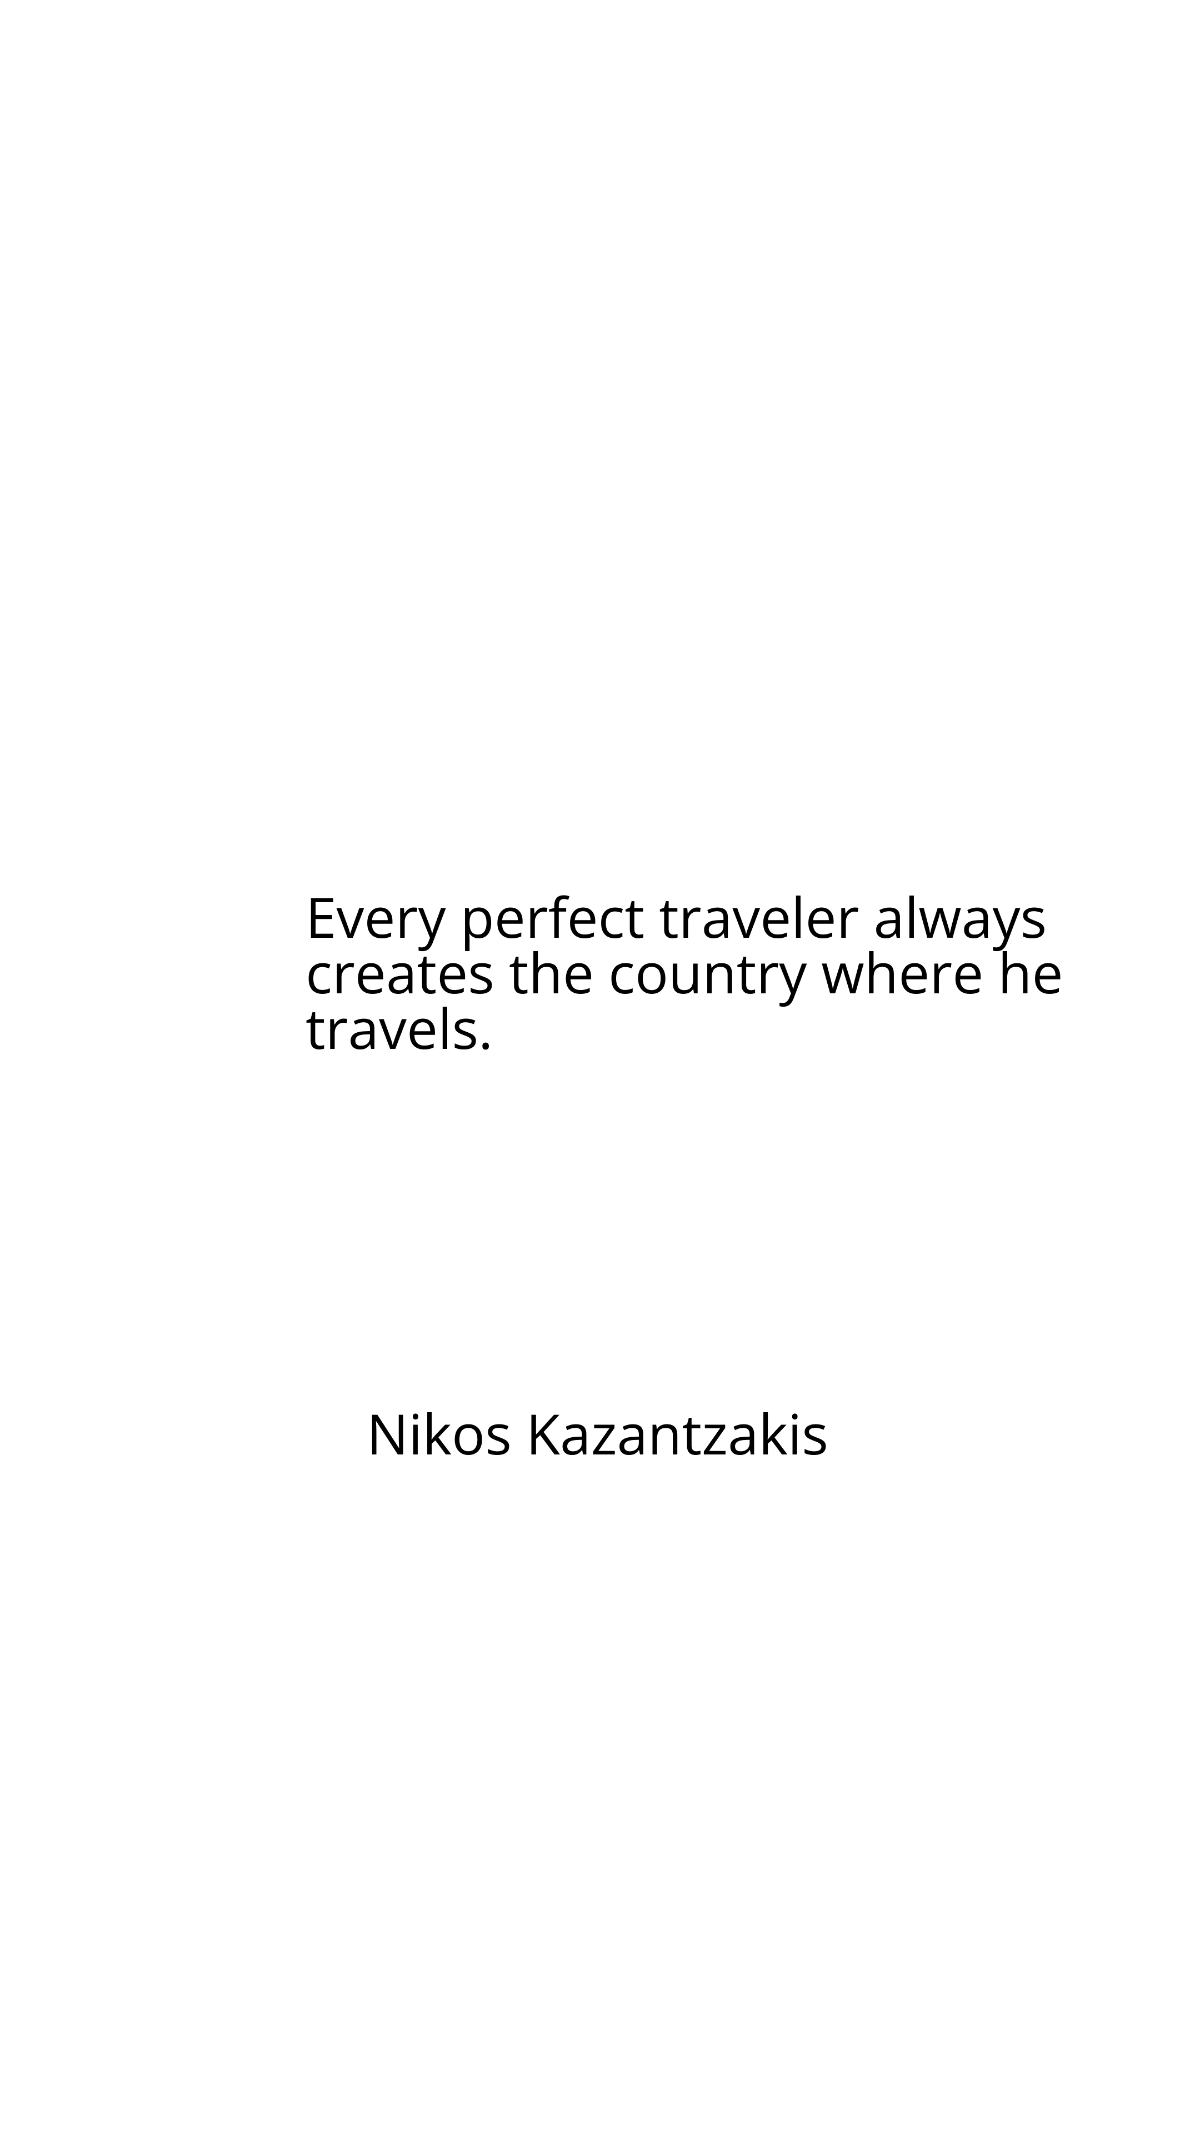 Nikos Kazantzakis - Every perfect traveler always creates the country where he travels.